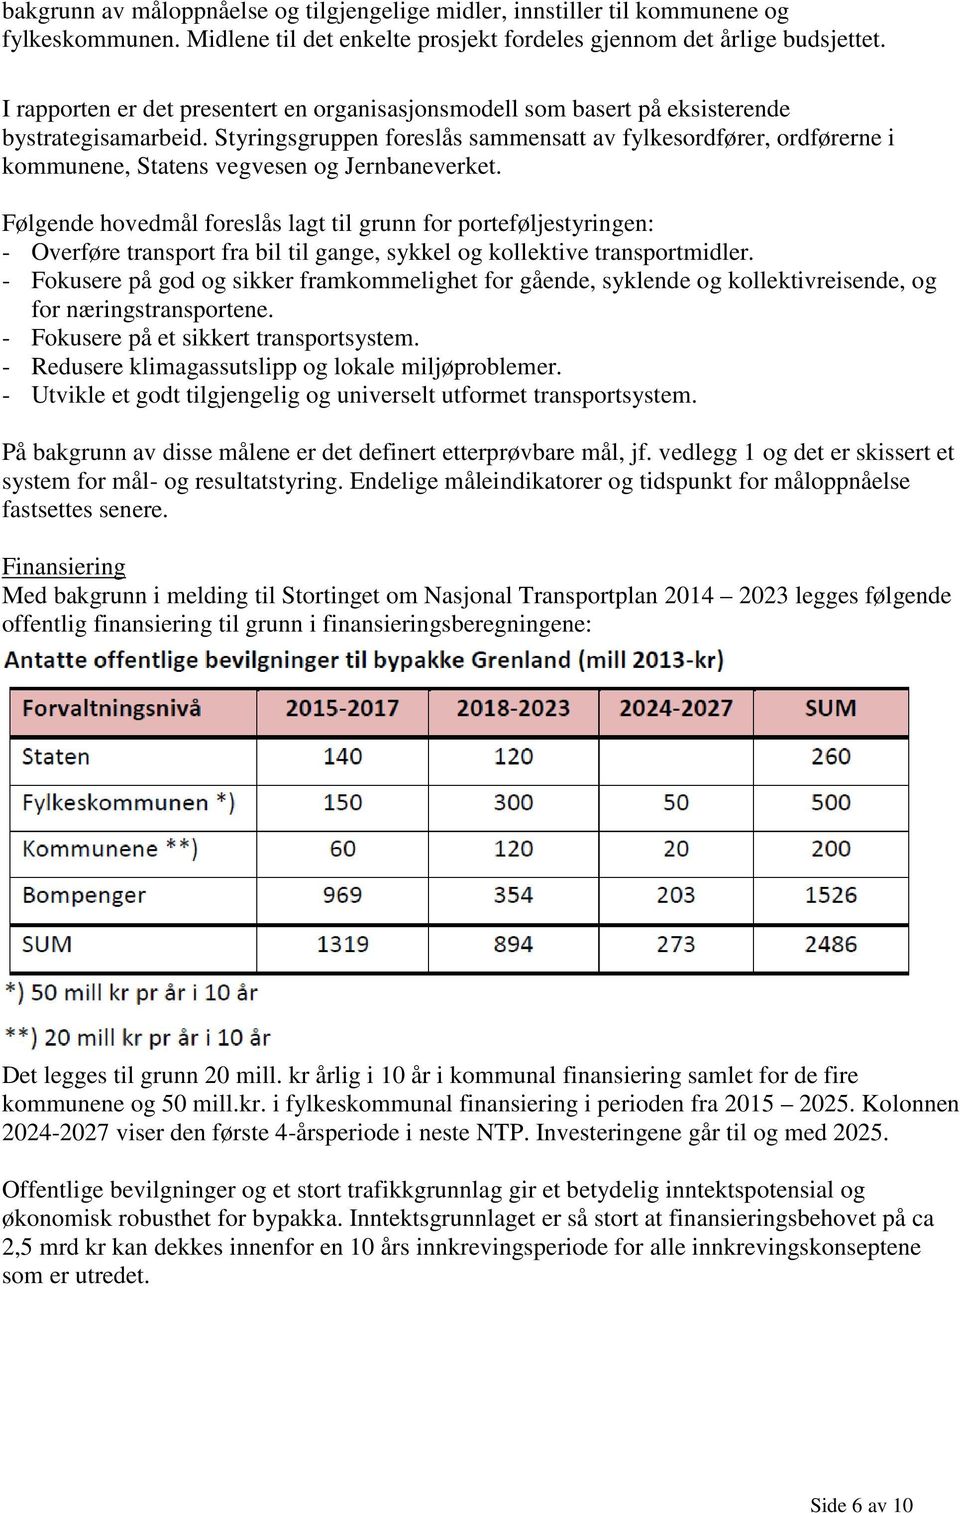 Styringsgruppen foreslås sammensatt av fylkesordfører, ordførerne i kommunene, Statens vegvesen og Jernbaneverket.